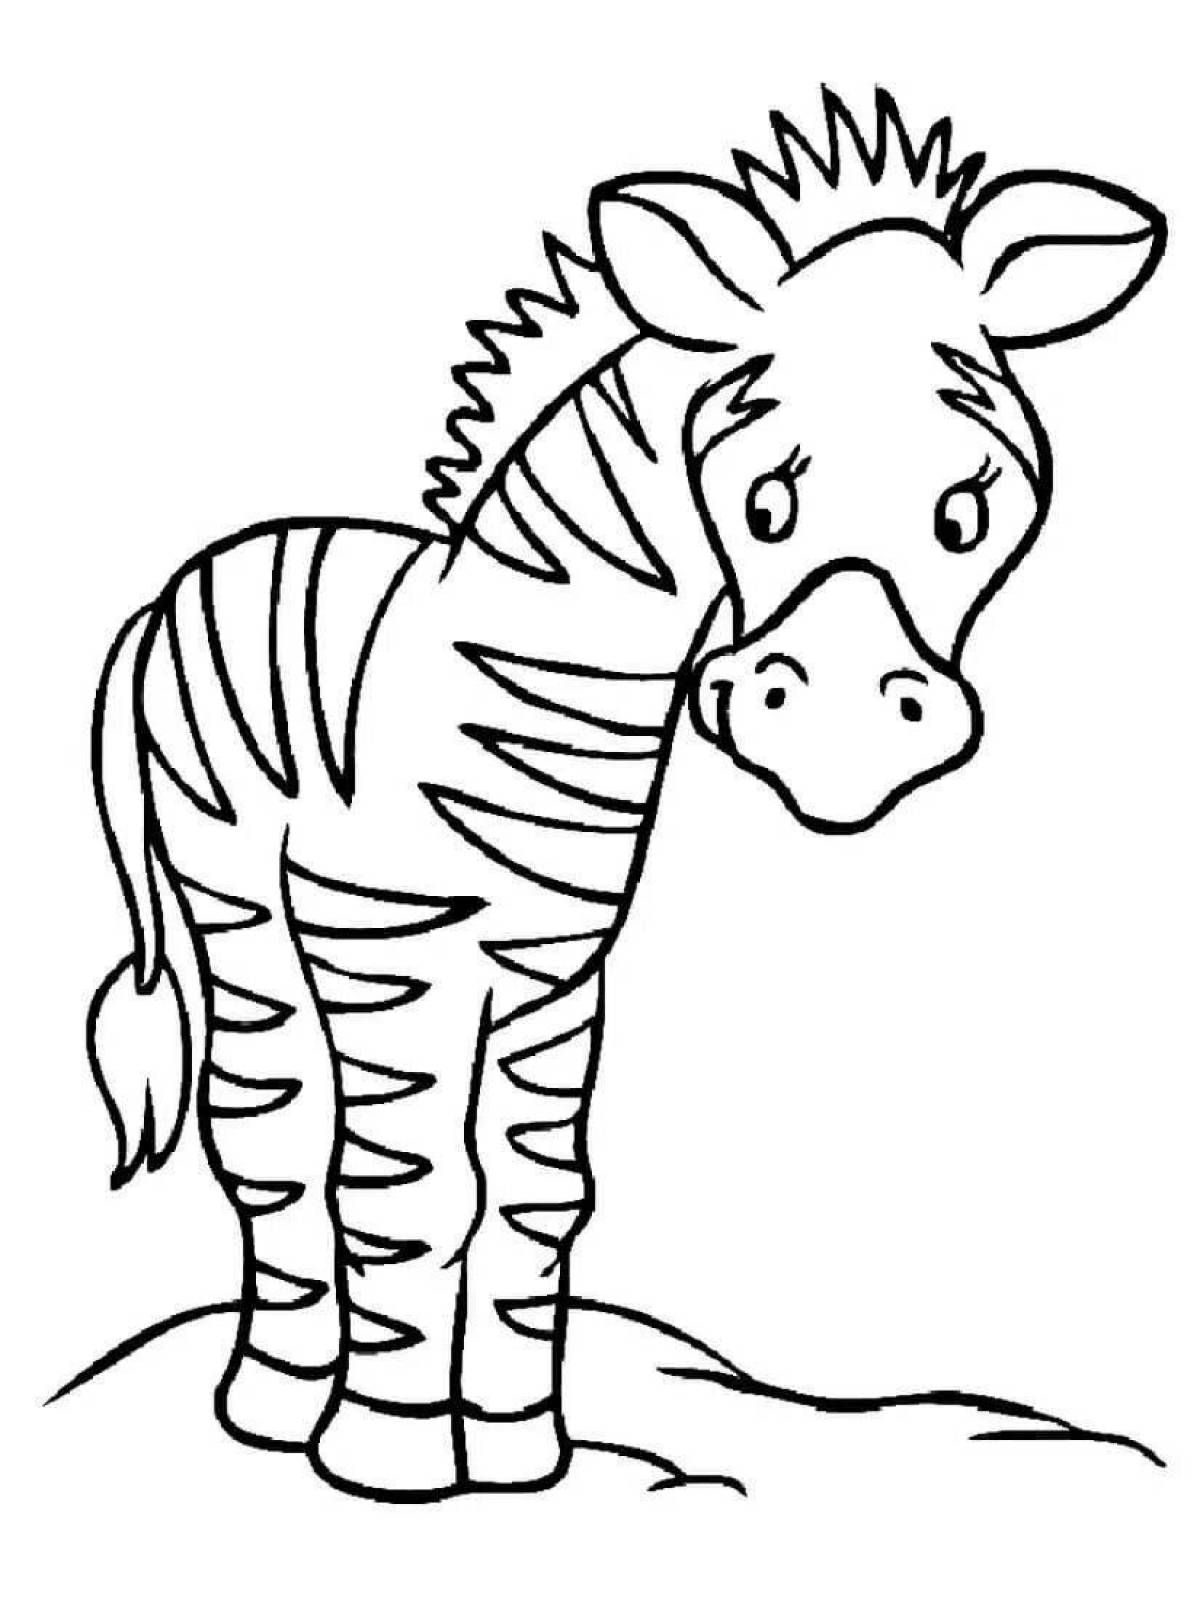 Увлекательная раскраска зебра для дошкольников 3-4 лет